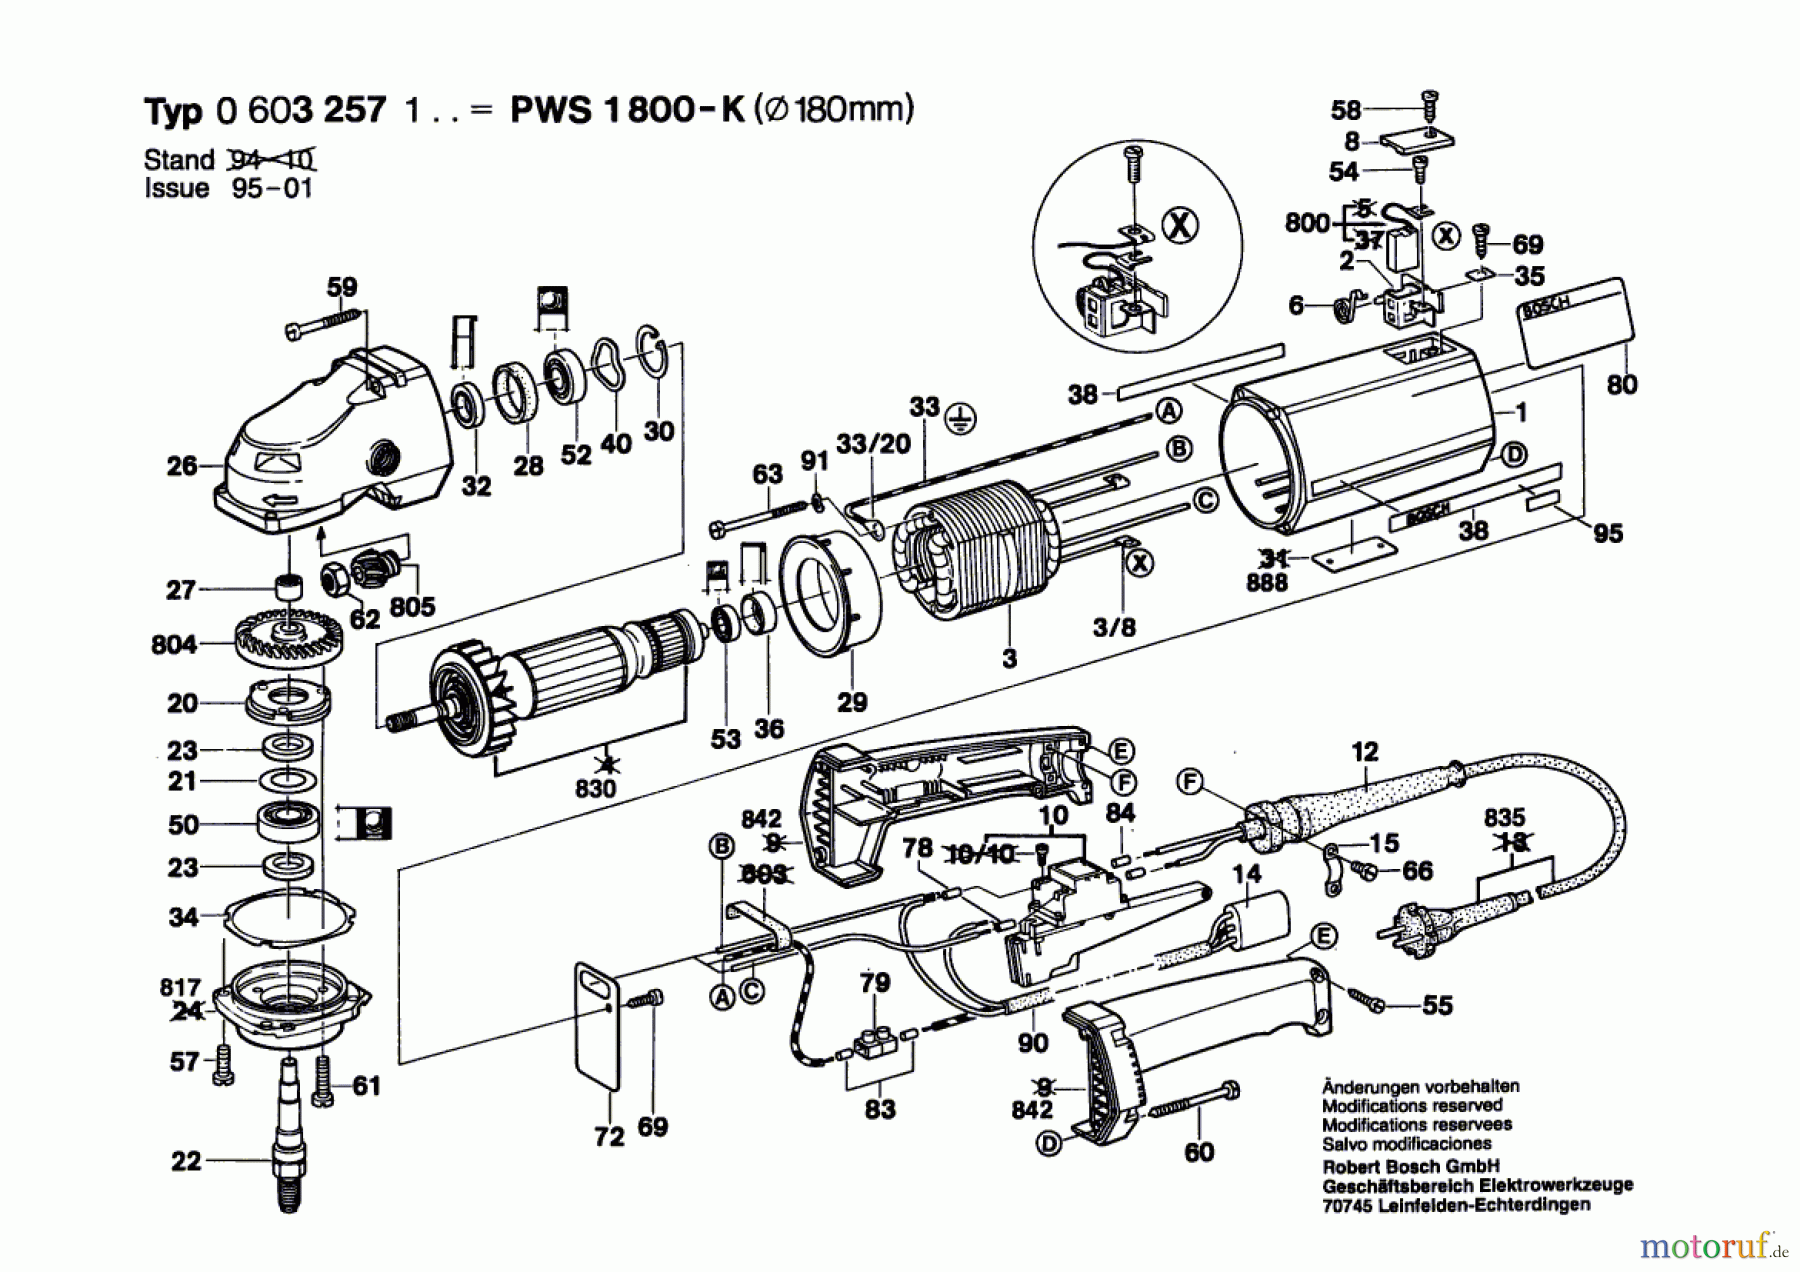  Bosch Werkzeug Hw-Winkelschleifer PWS 1800-K Seite 1